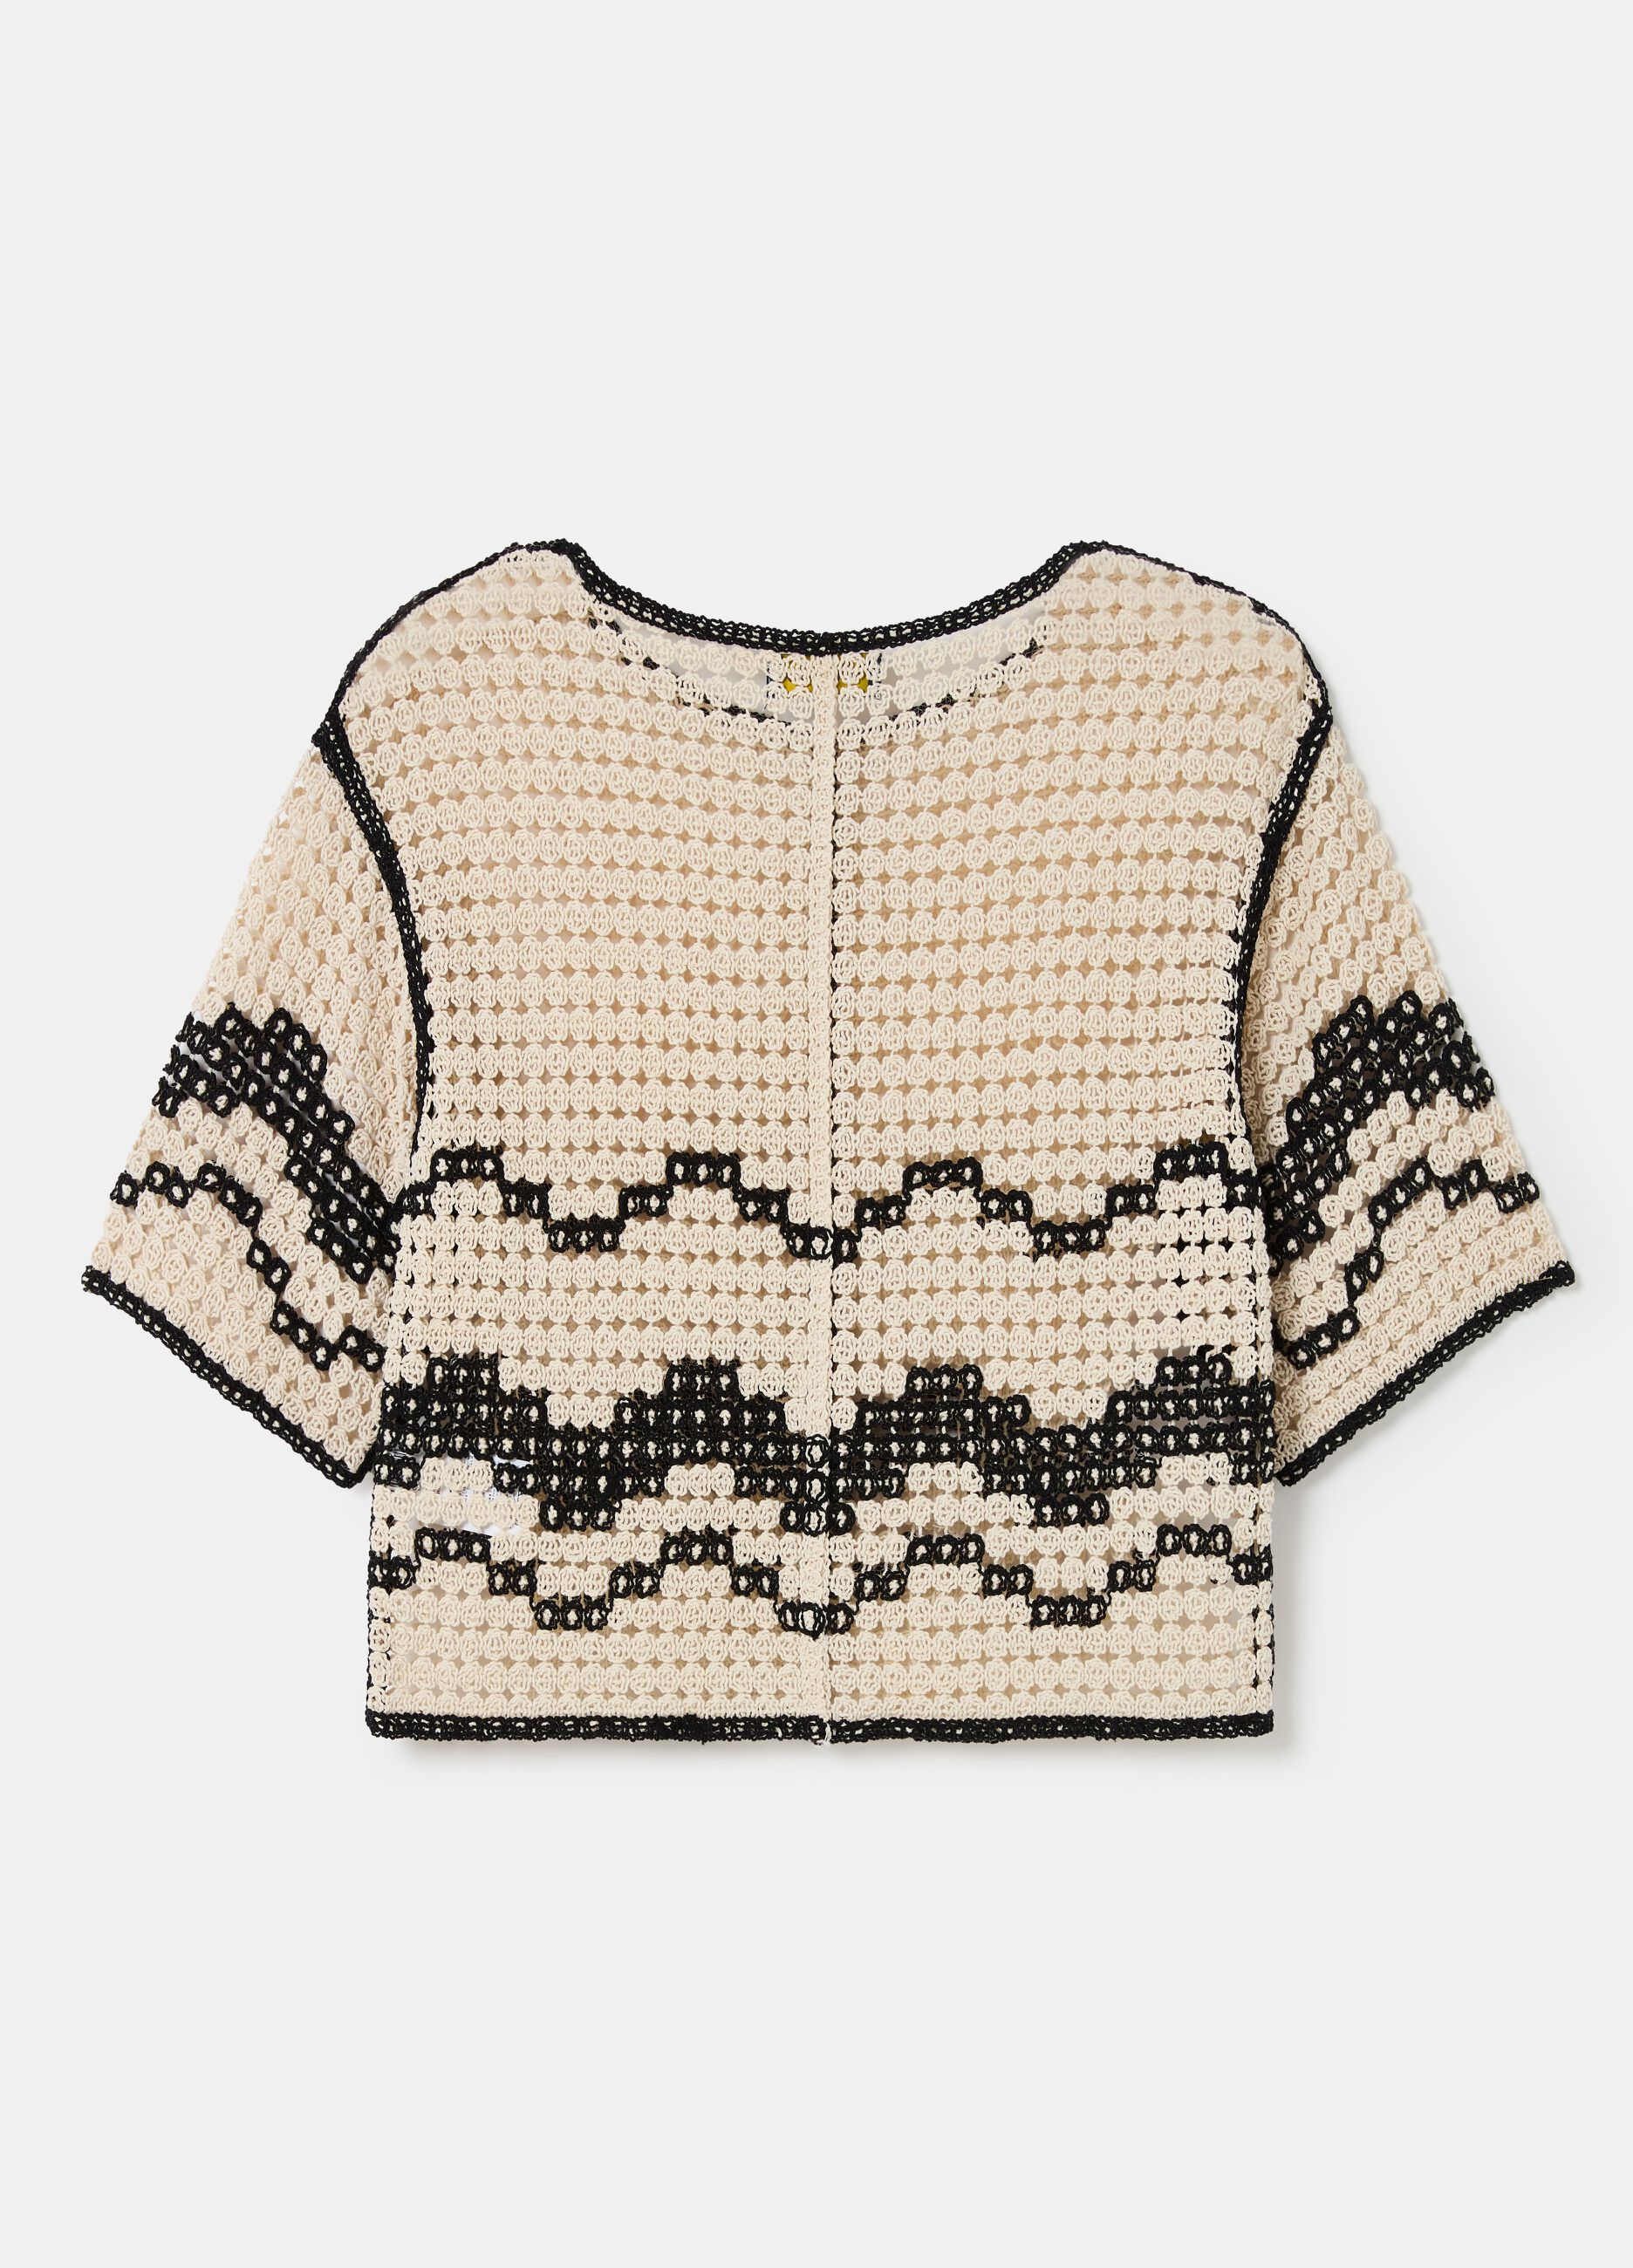 Crochet top with wavy motif